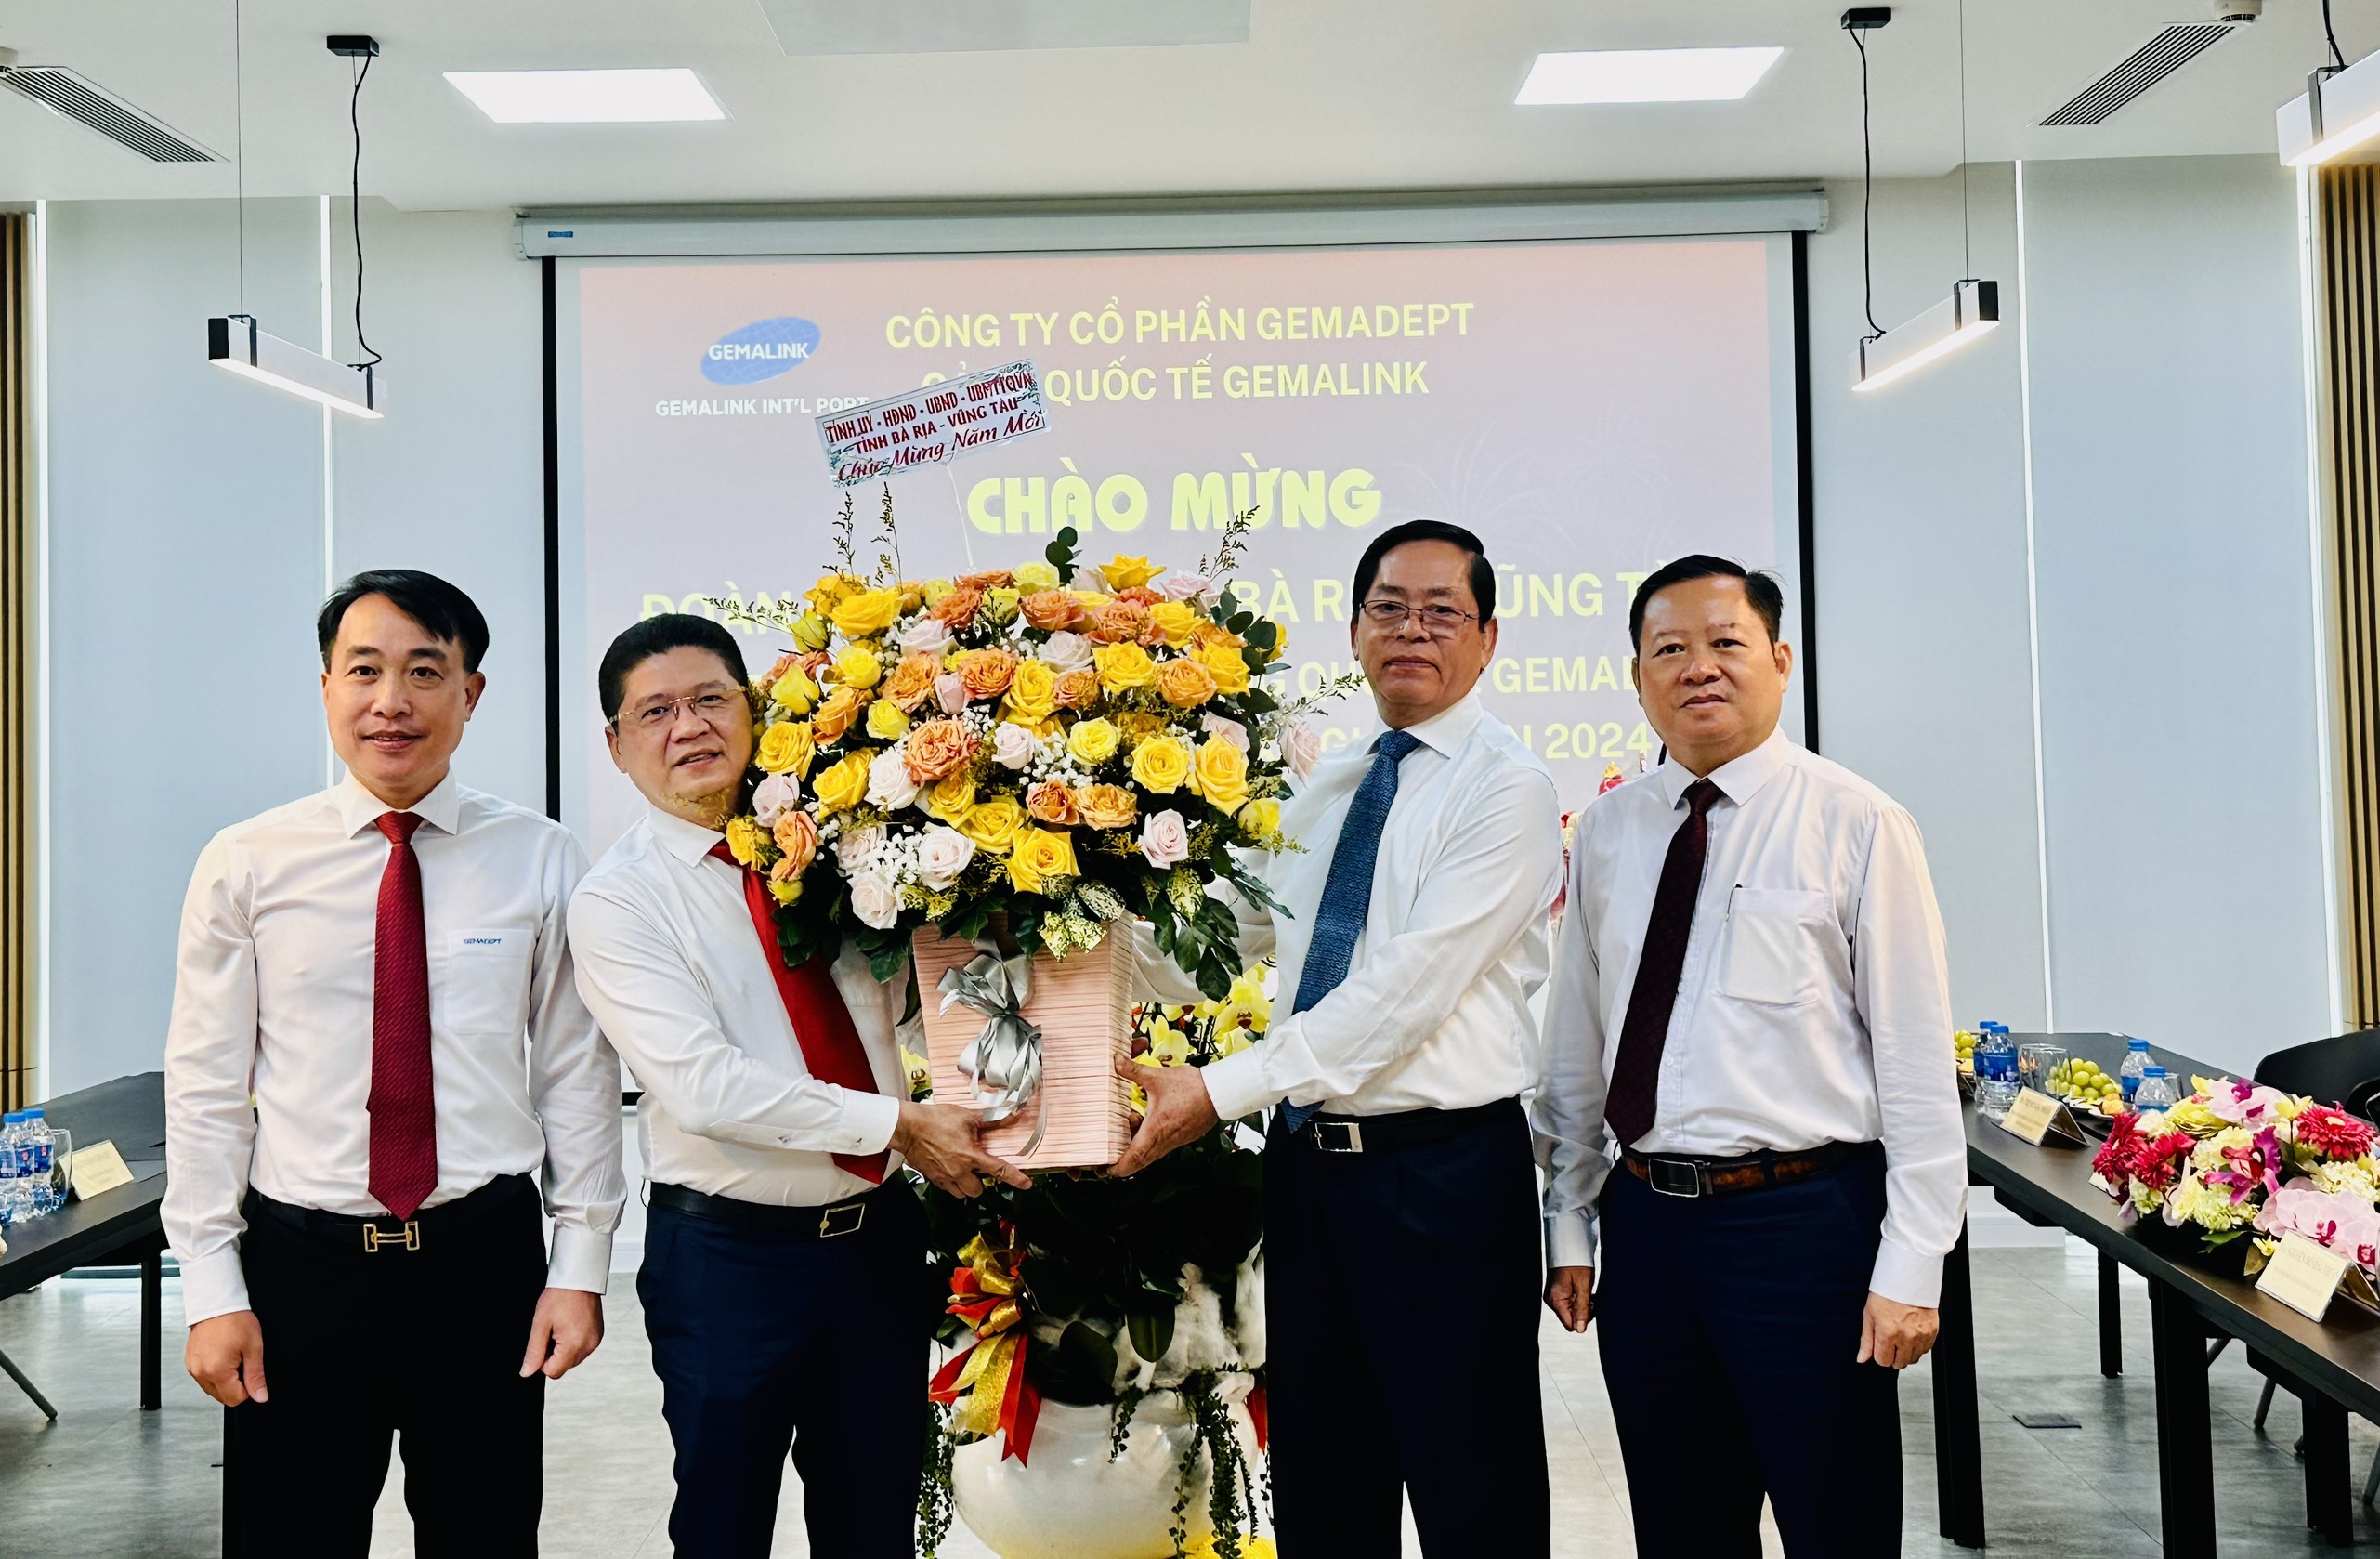 Ông Phạm Viết Thanh, Ủy viên Trung ương Đảng, Bí thư Tỉnh ủy, Chủ tịch HĐND tỉnh tặng hoa và quà cho đại diện Cảng Gemalink.